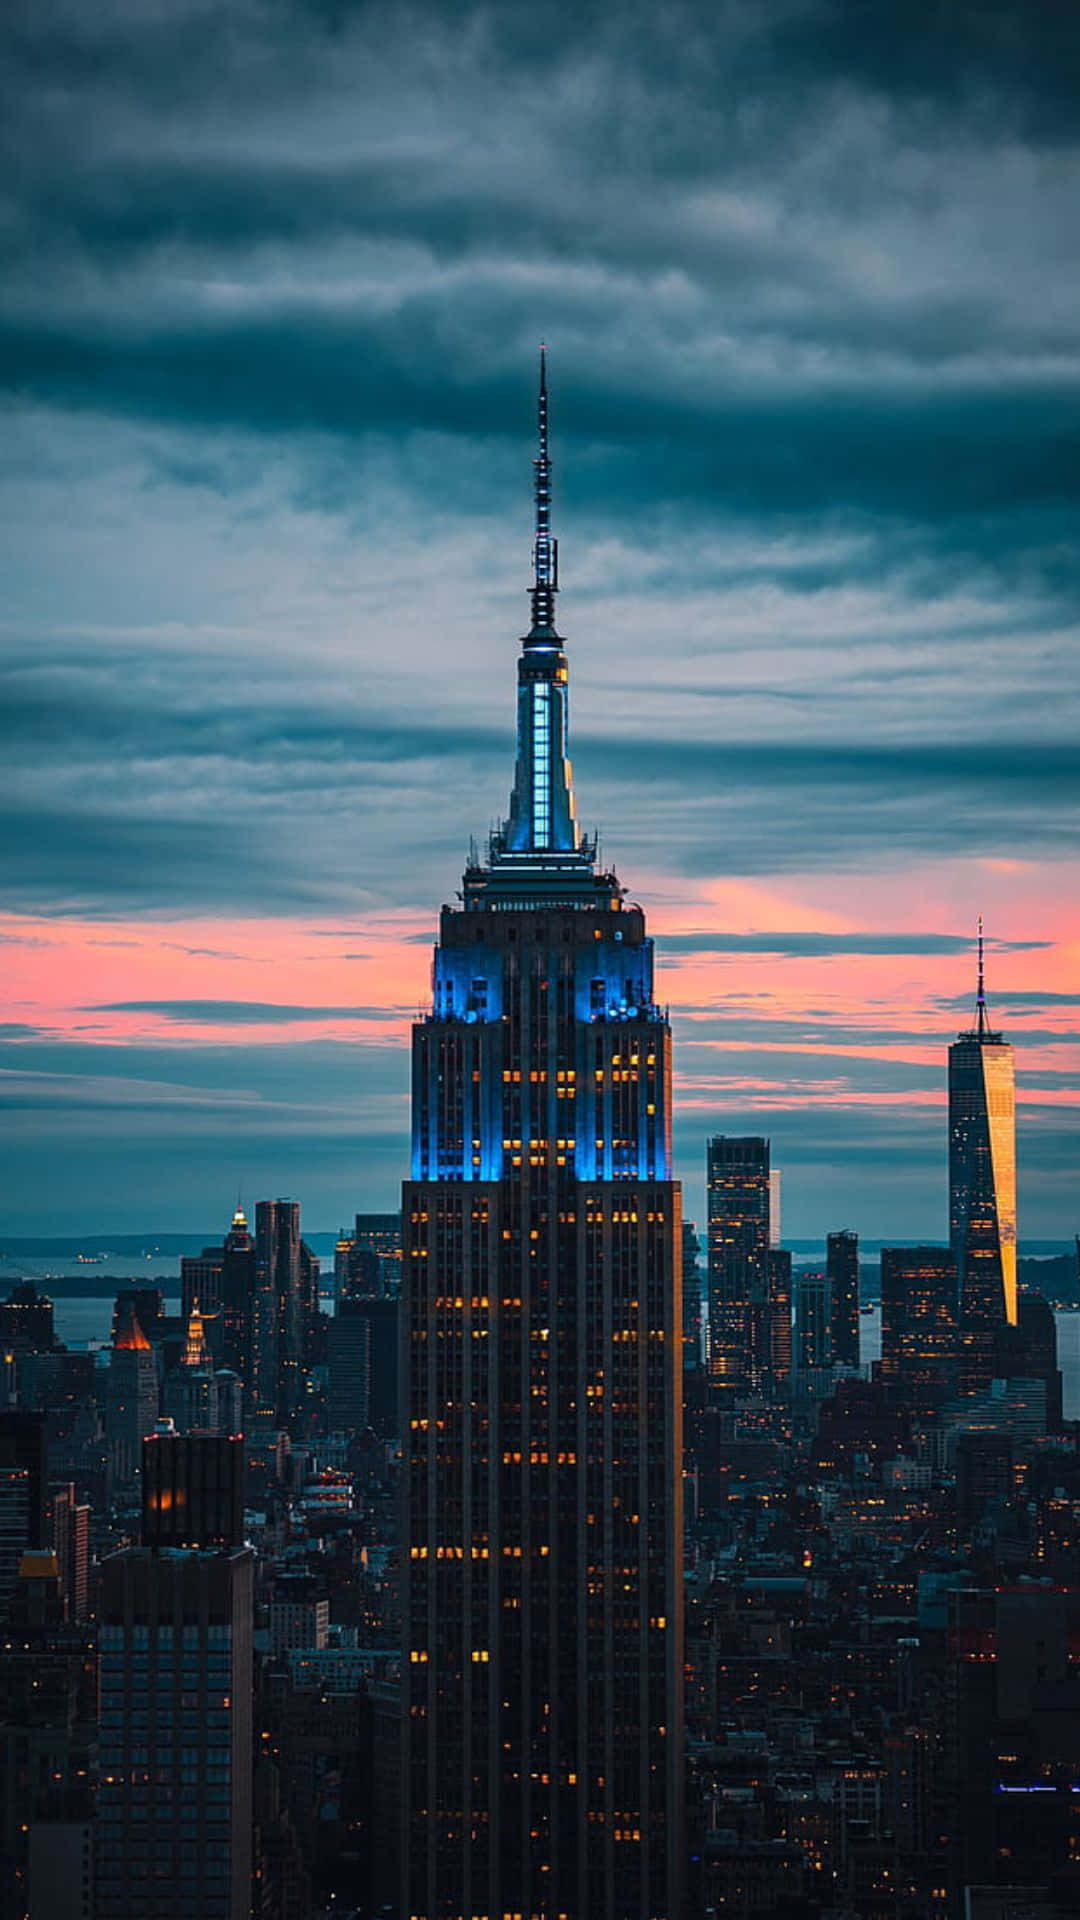 Brilhoazul Do Empire State Building - Melhor Plano De Fundo De Nova York.